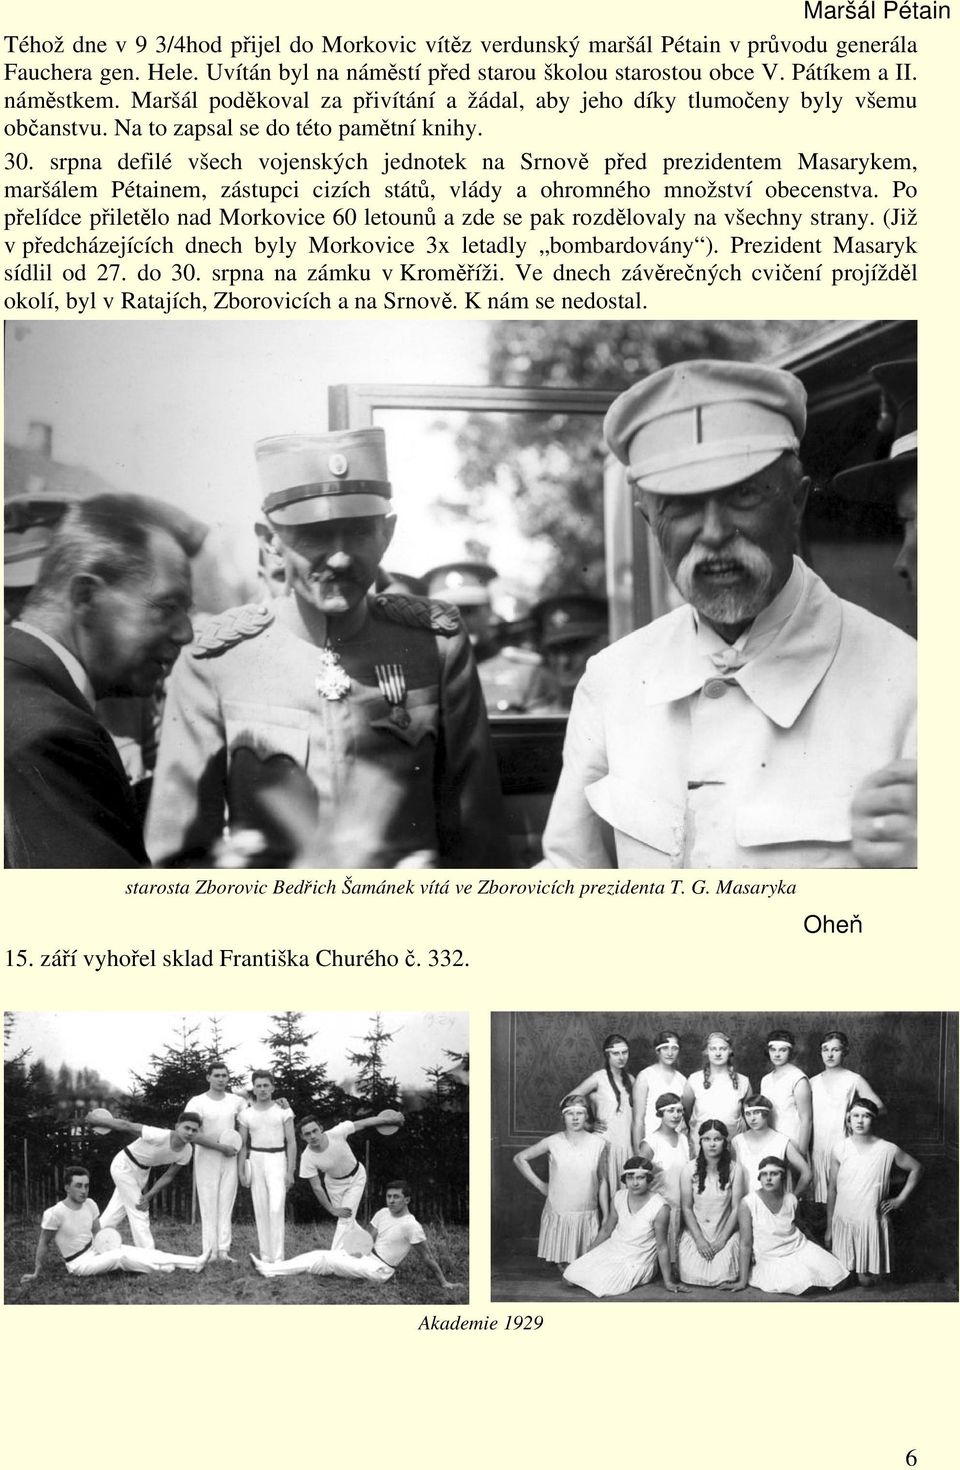 srpna defilé všech vojenských jednotek na Srnově před prezidentem Masarykem, maršálem Pétainem, zástupci cizích států, vlády a ohromného množství obecenstva.